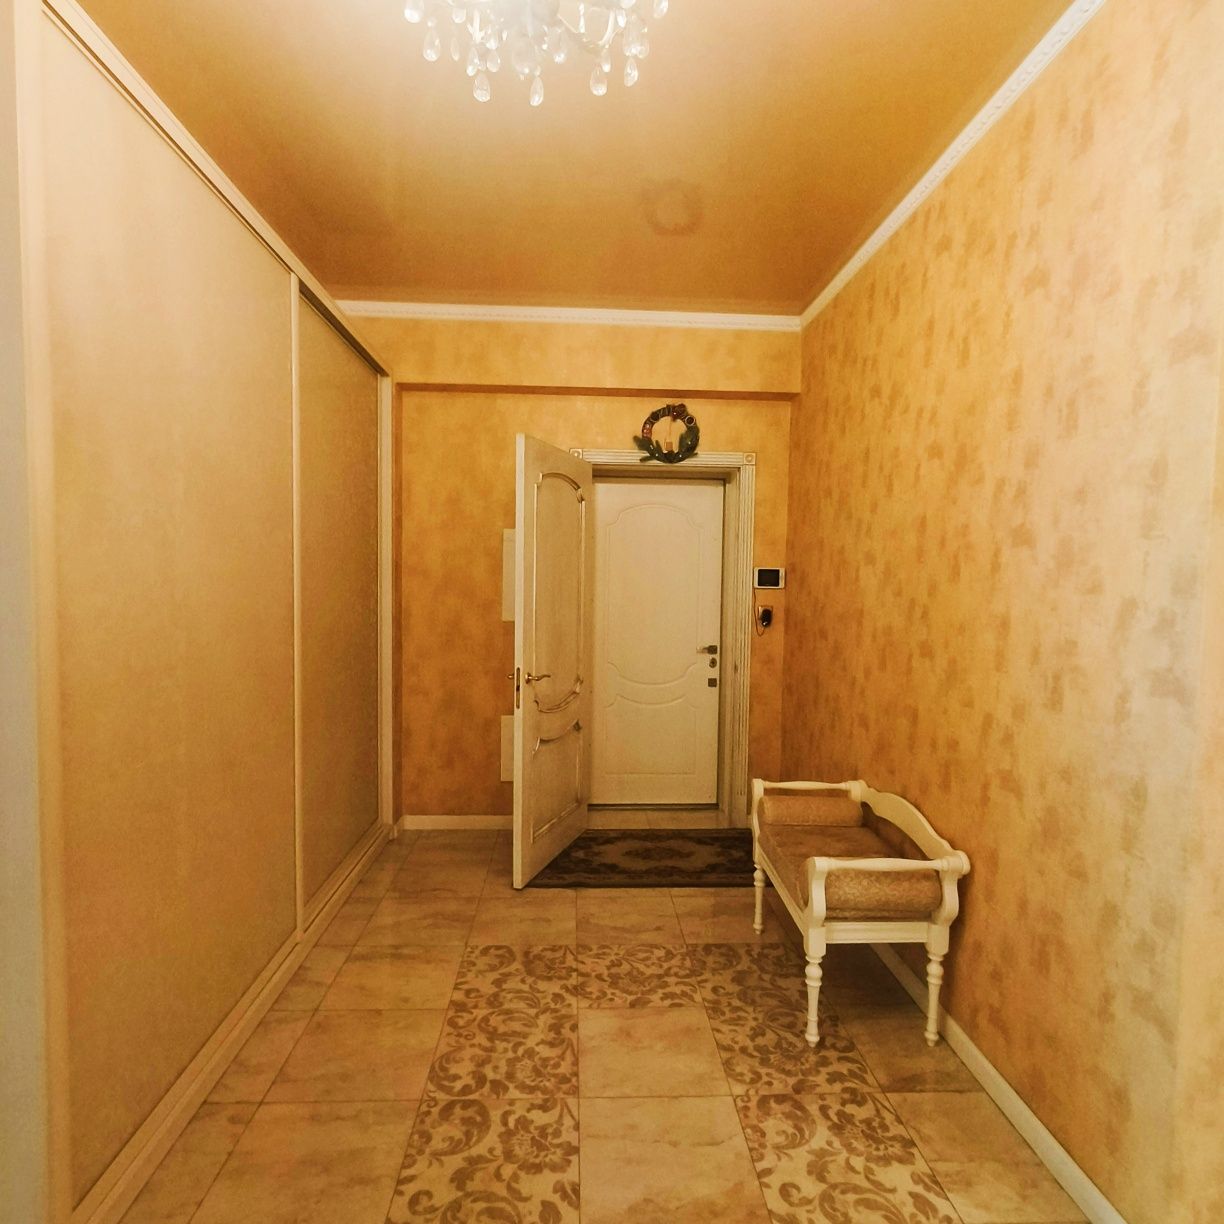 Продаётся двухуровневая квартира в Таунхаусе в Приднепровске